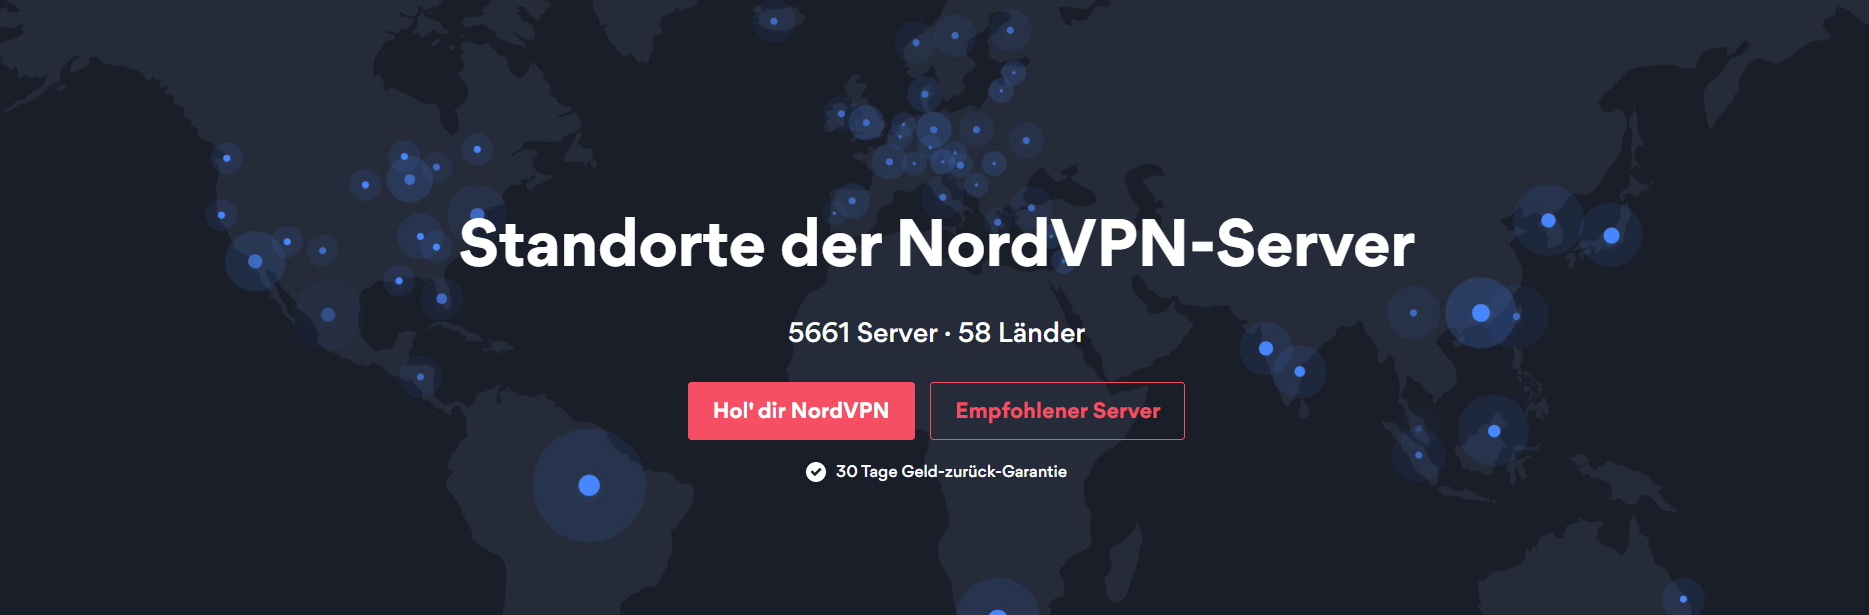 NordVPN_Server